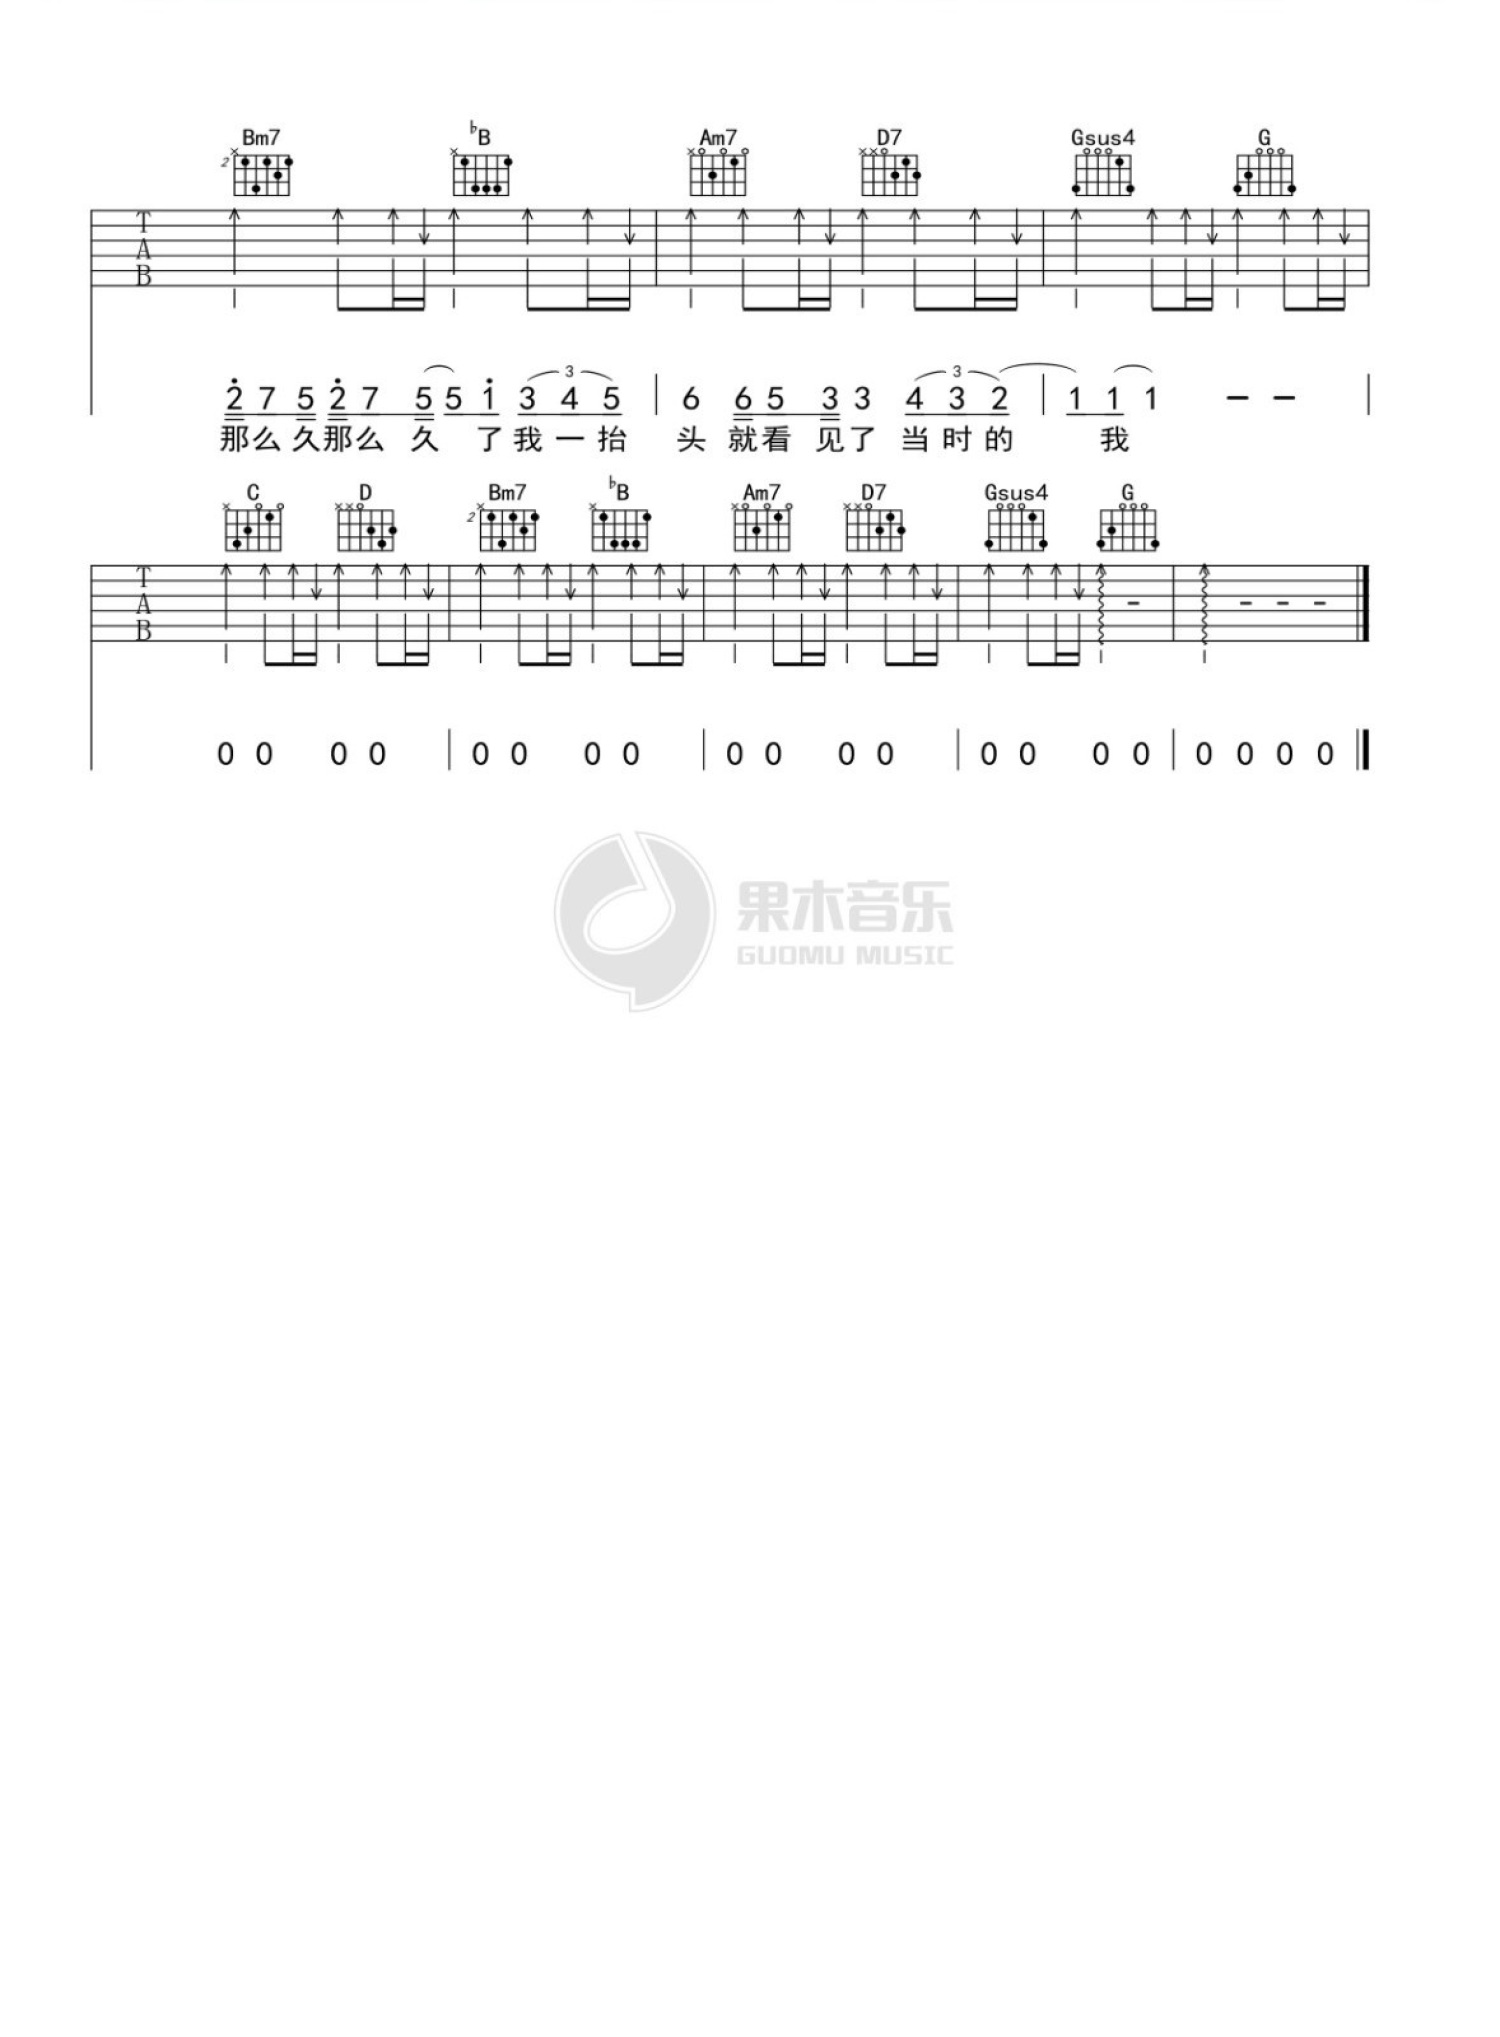 陰天-簡單版-莫文蔚雙手簡譜預覽-EOP線上樂譜架